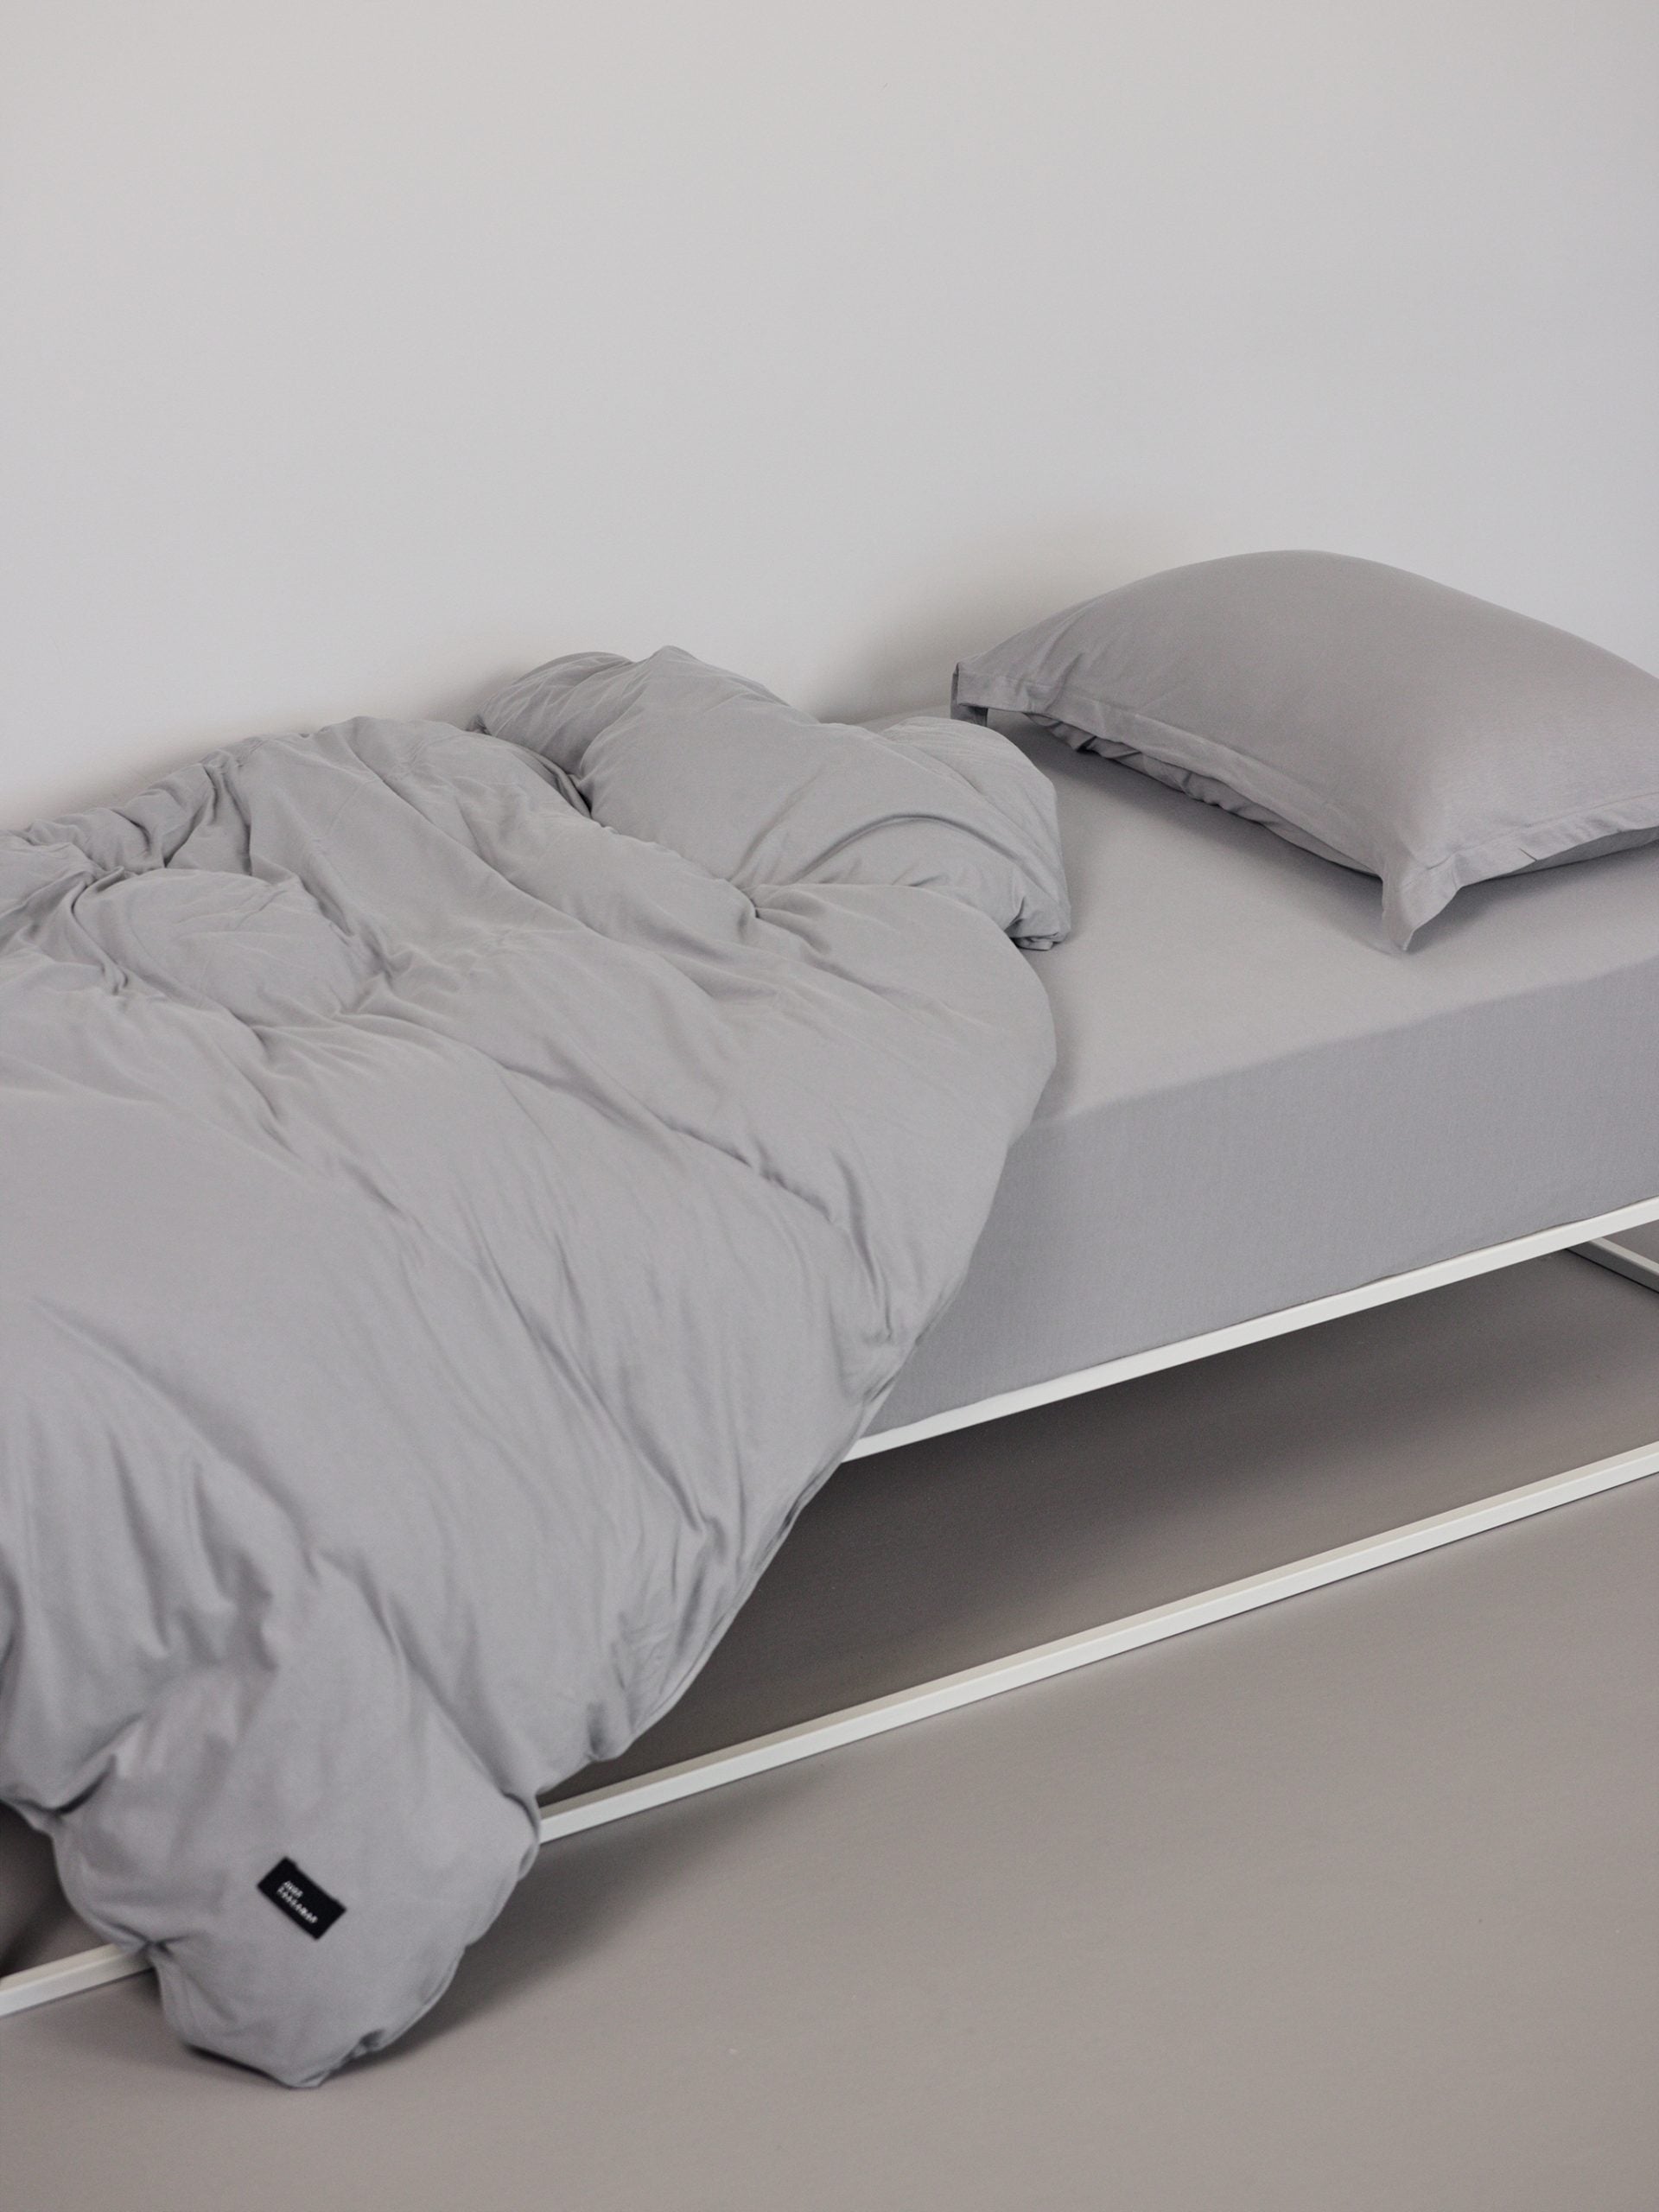 מיטת ברזל לבנה עם סט מצעים וכריות עם ציפיות לכריות בצבע אפור